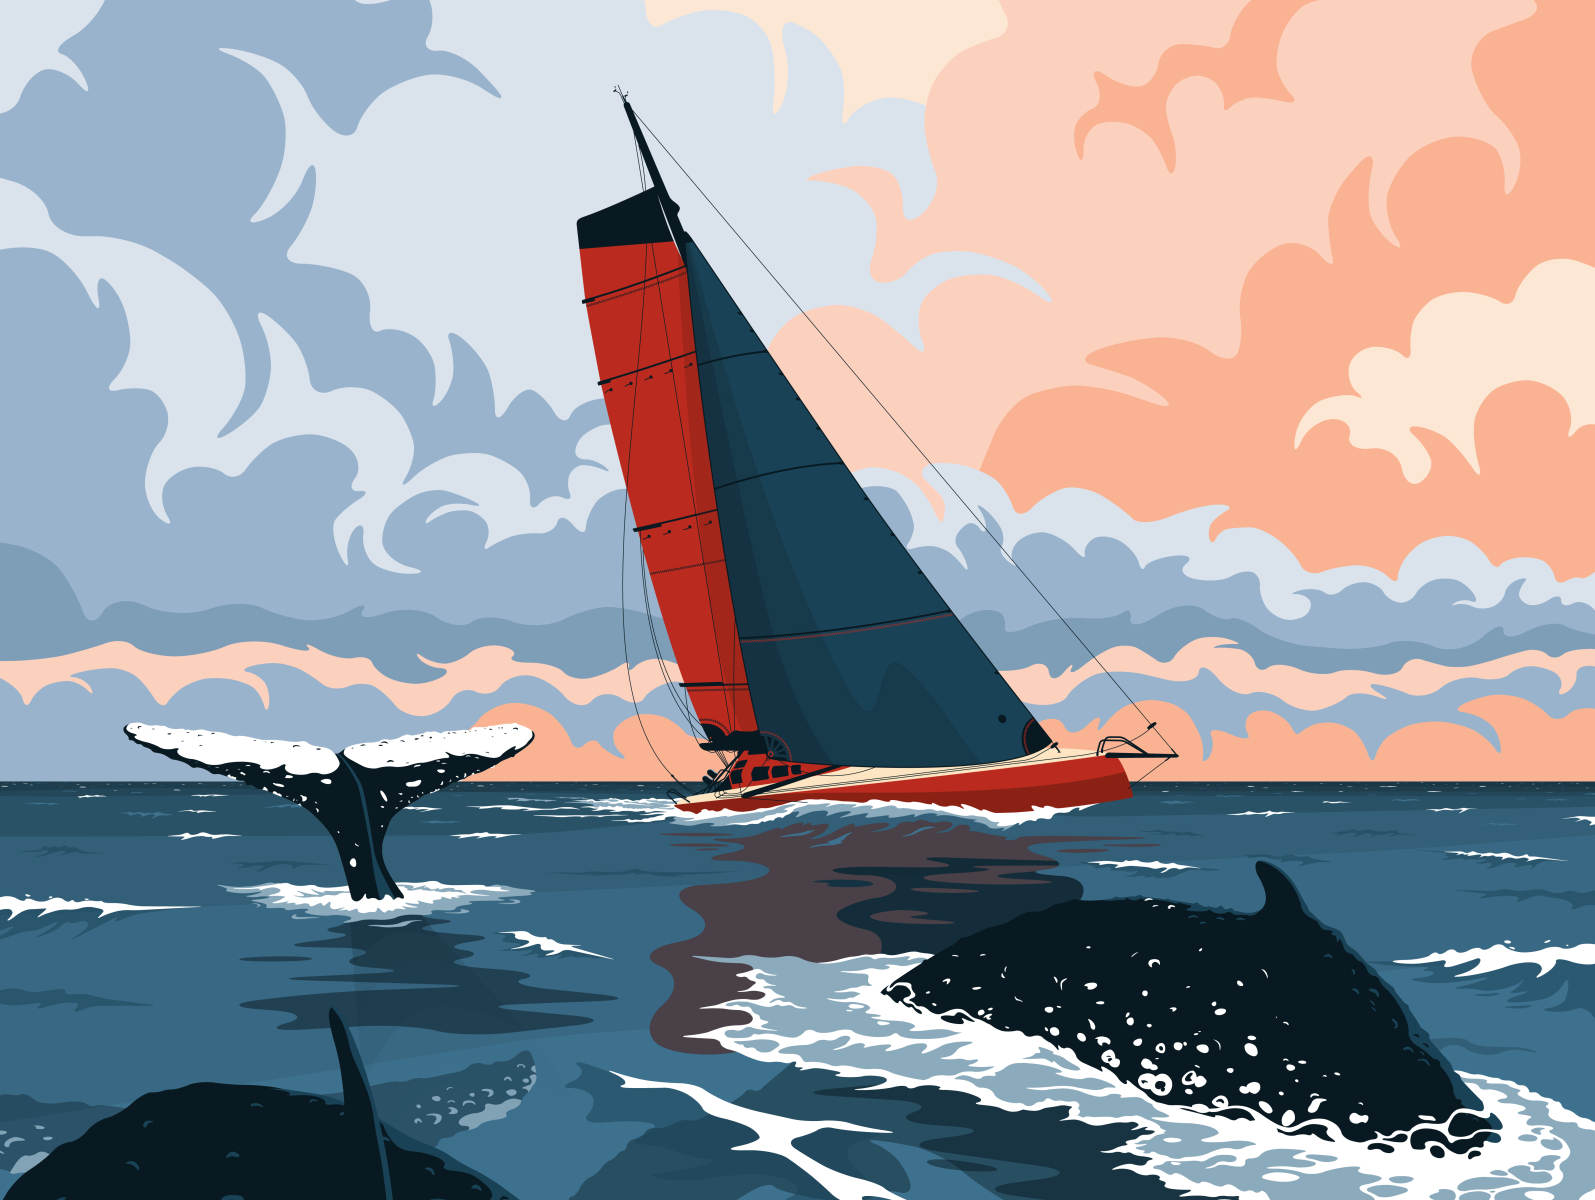 J+22 Cap de Bonne Espérance boat cloud flat illustration imoca sail sailing sea sunset vector whale